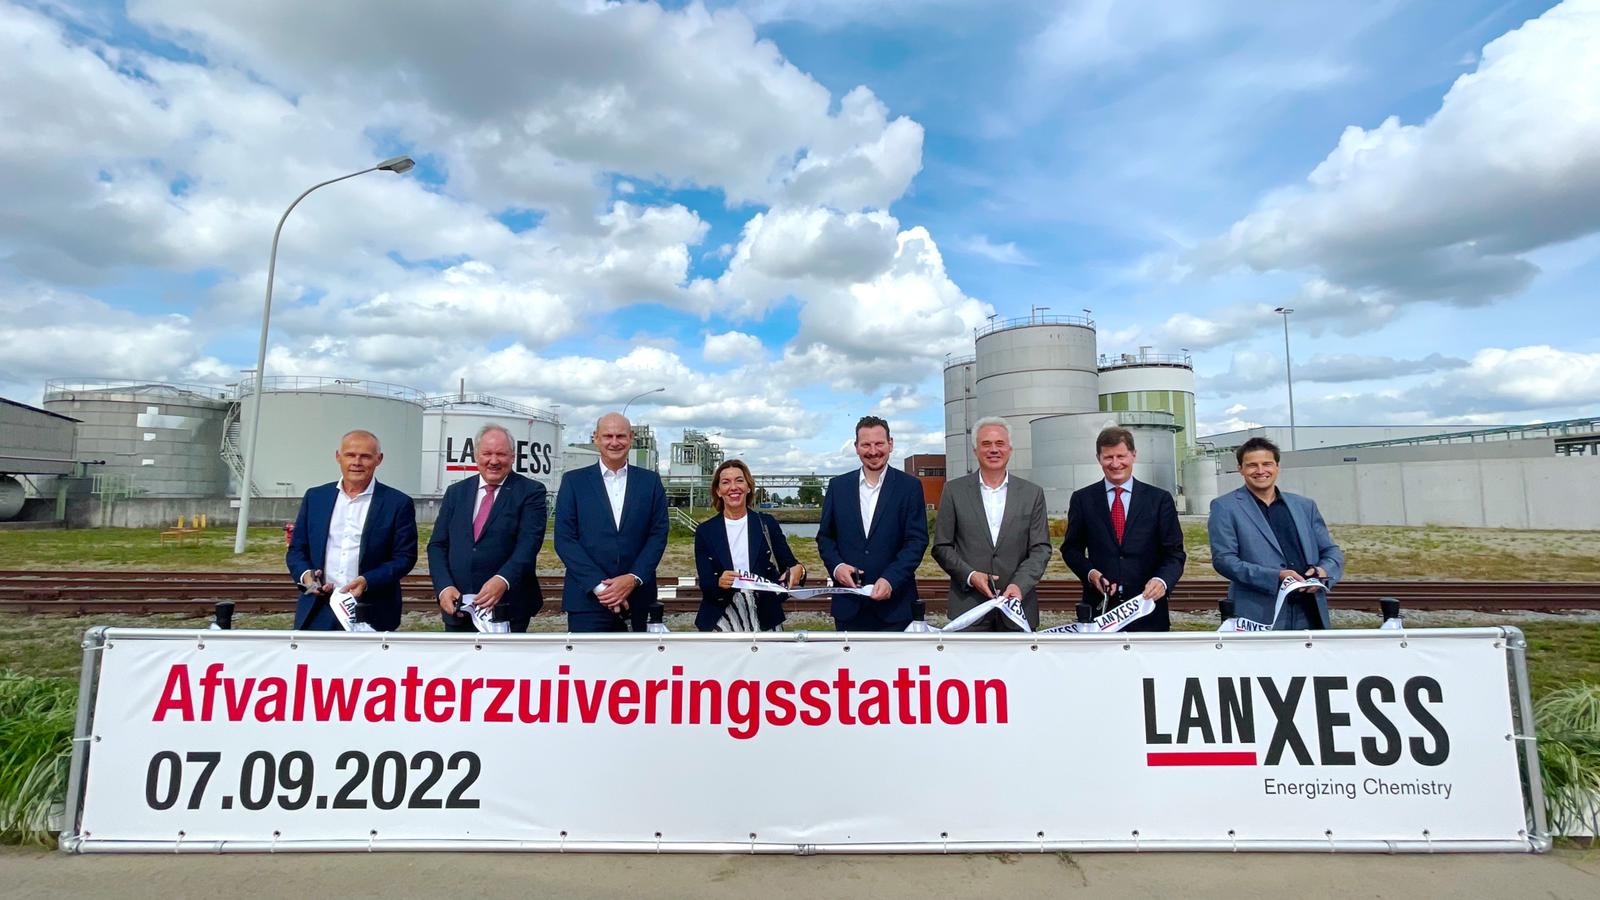 20220908 Kallo Lanxess inhuldiging afvalwaterzuiveringsinstallatie